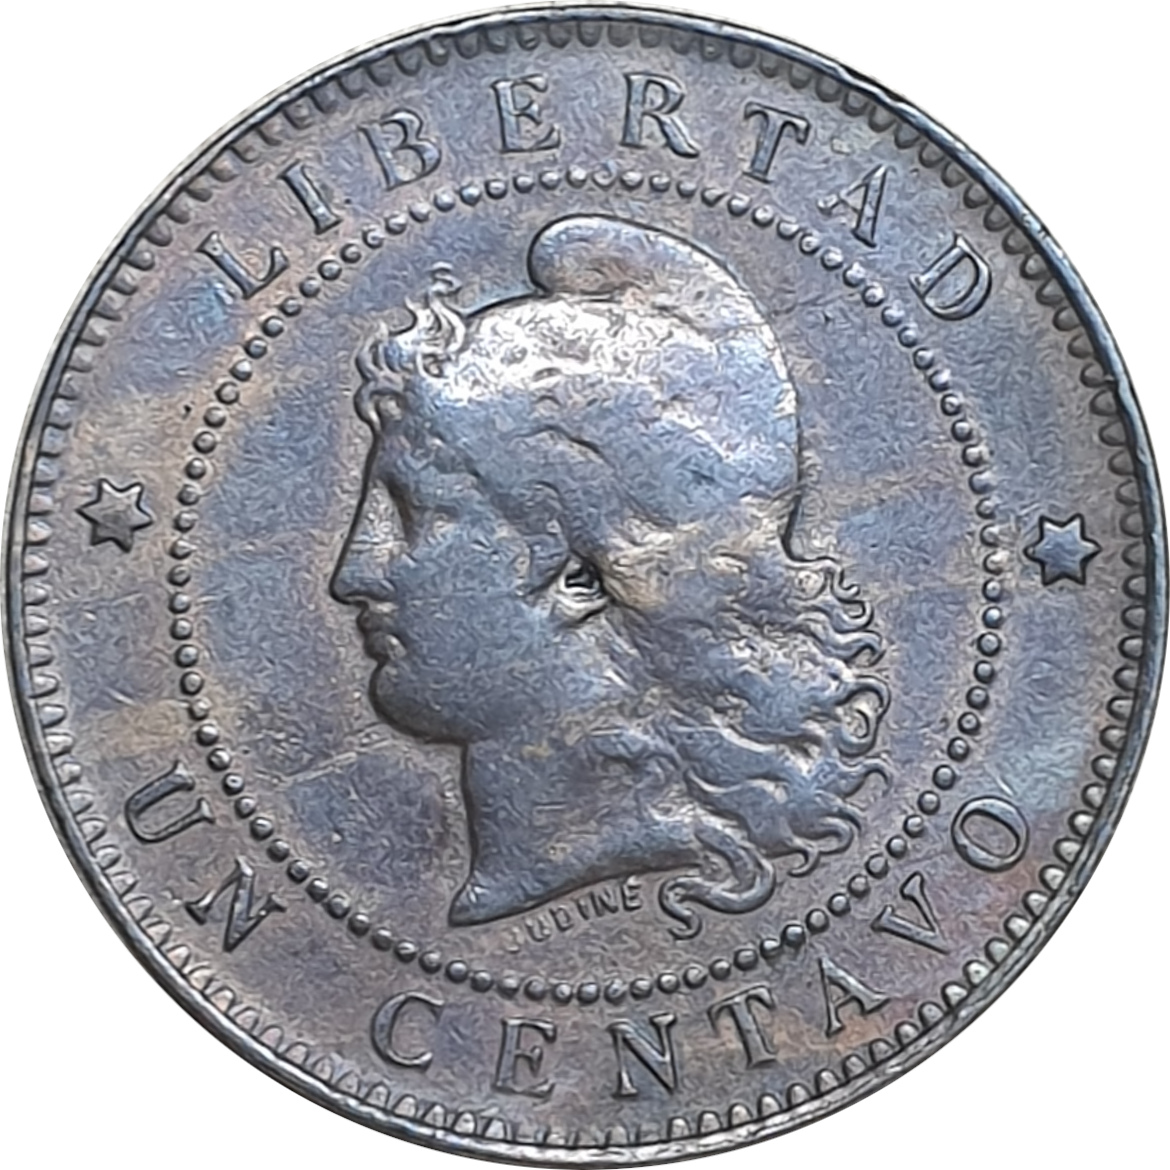 1 centavo - Liberty head